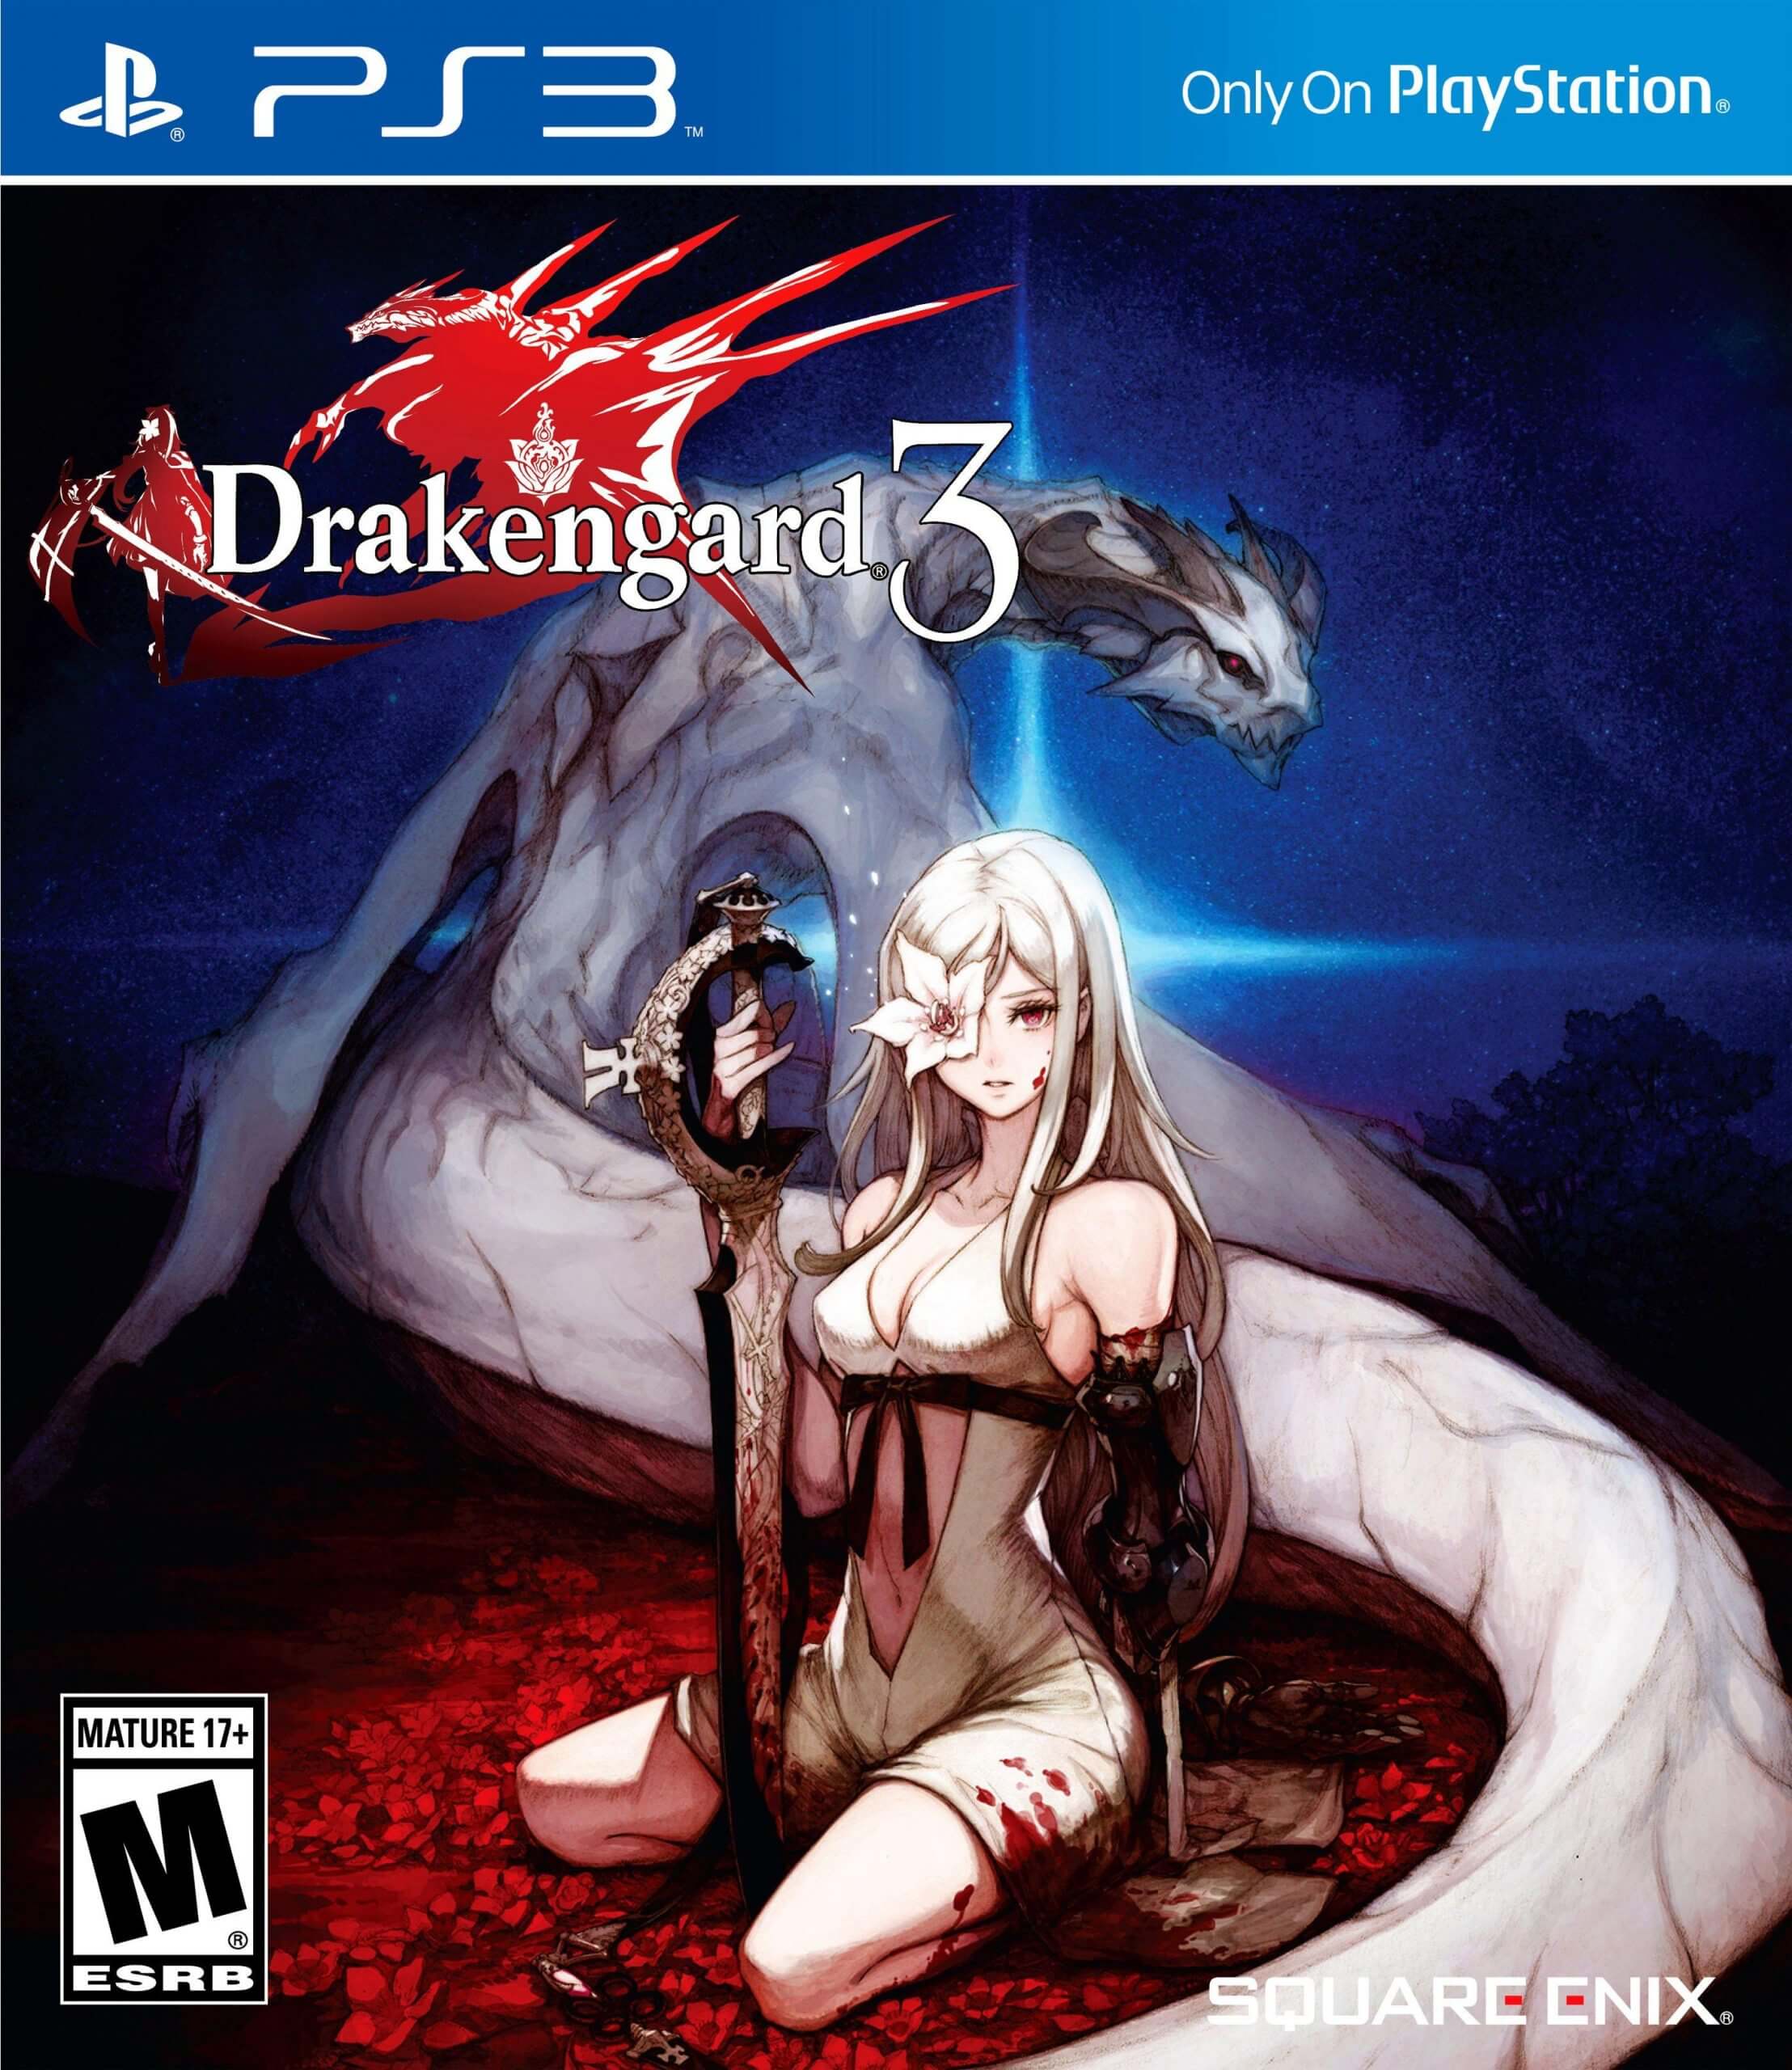 drakengard 3 nier download free